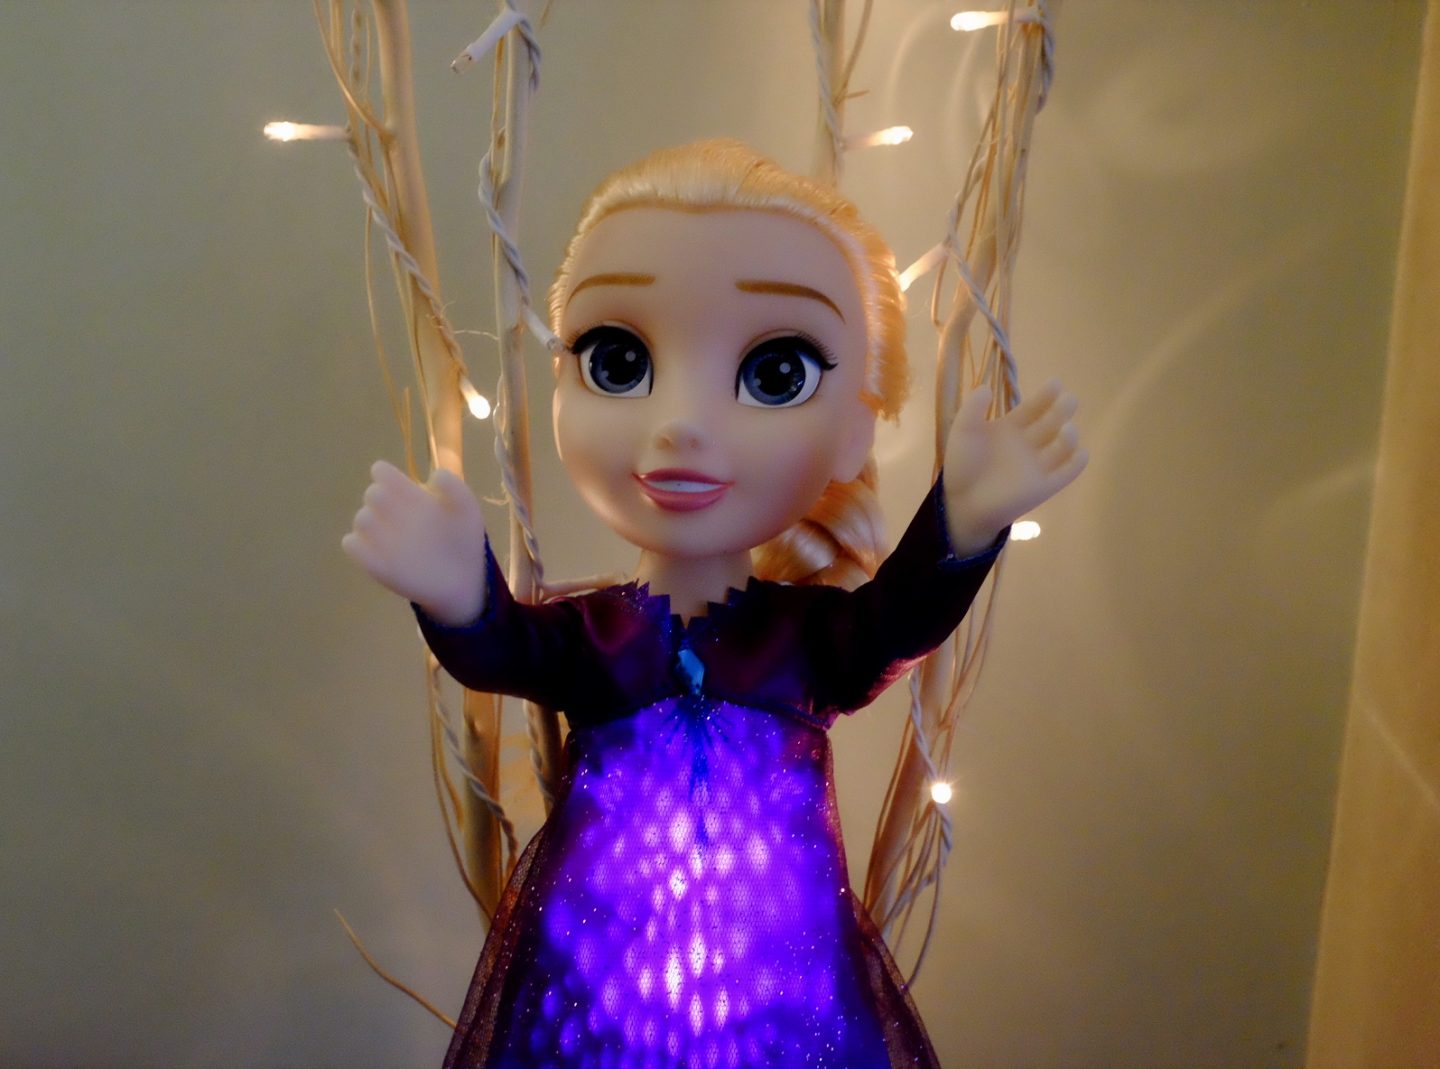 Elsa singing doll lit up